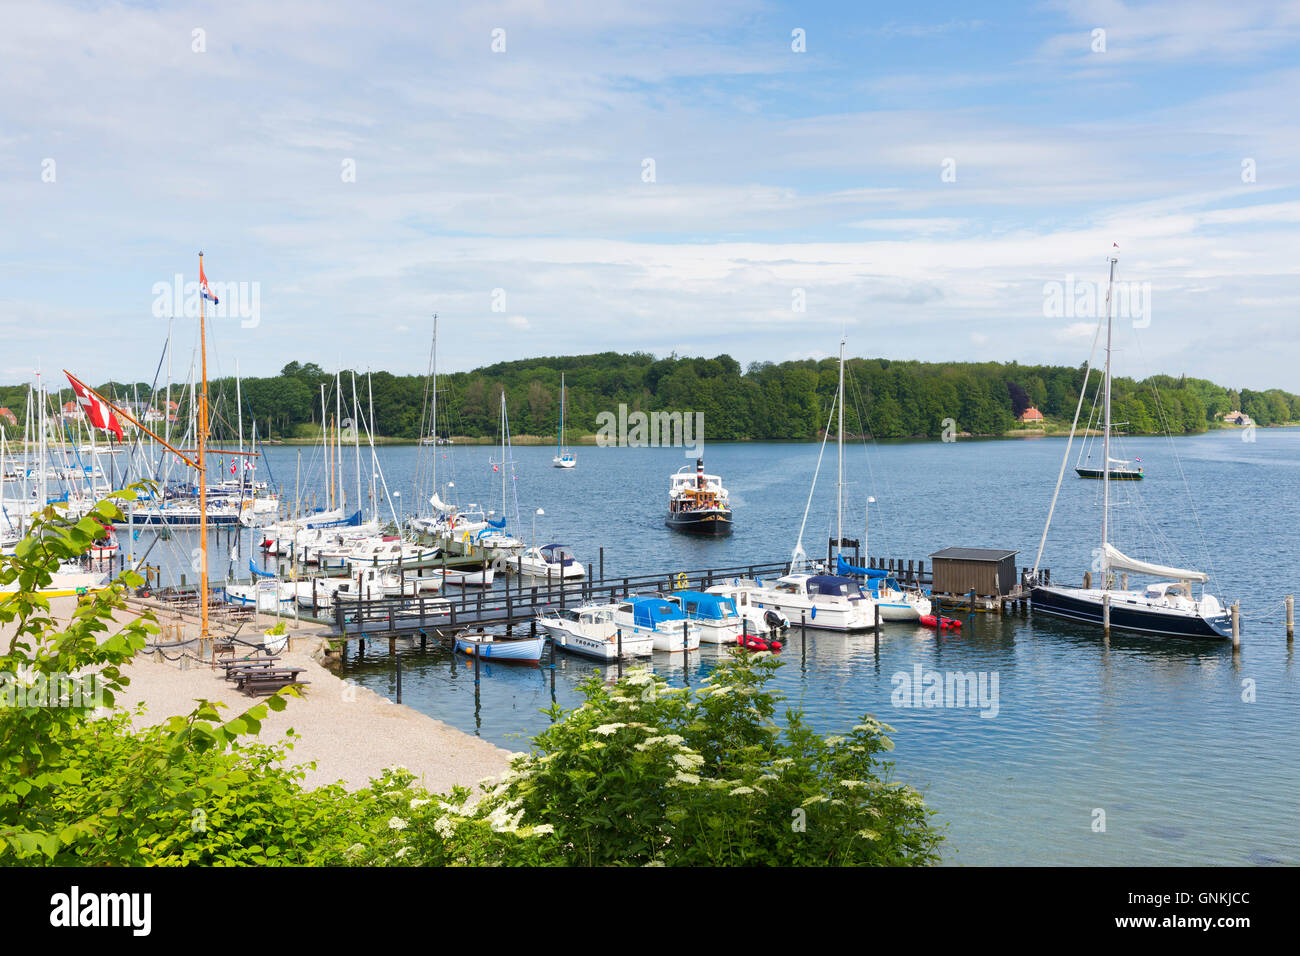 Boats in harbour scene at Tasinge Island off Svendborg, of South Funen Archipelago, Denmark Stock Photo